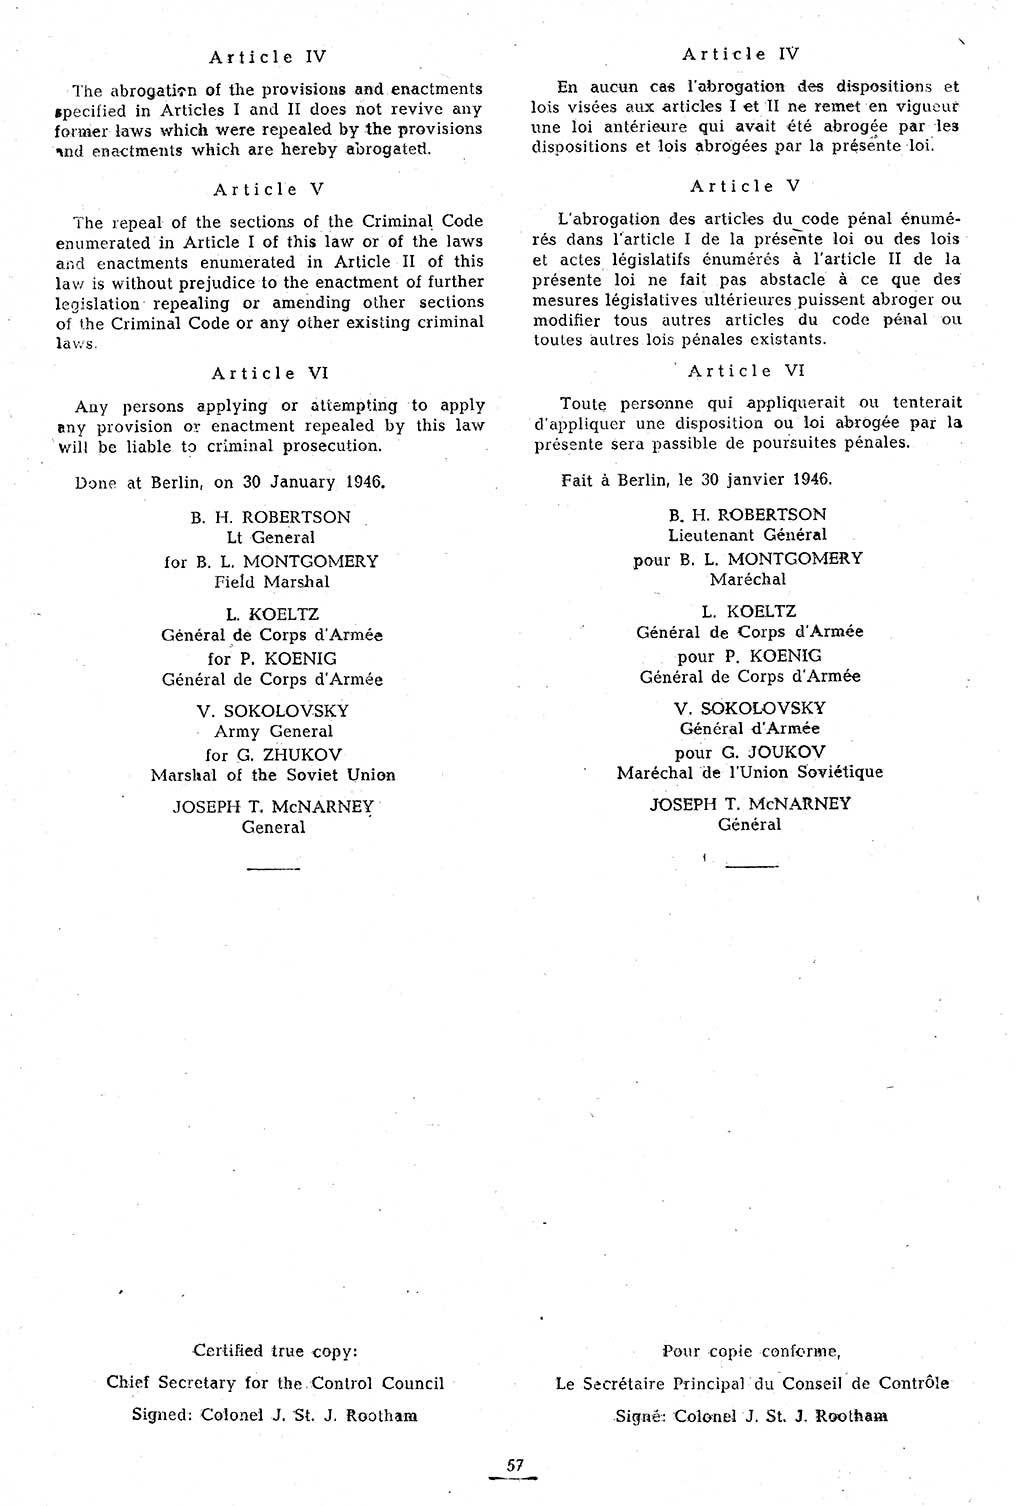 Amtsblatt des Kontrollrats (ABlKR) in Deutschland 1946, Seite 57/1 (ABlKR Dtl. 1946, S. 57/1)